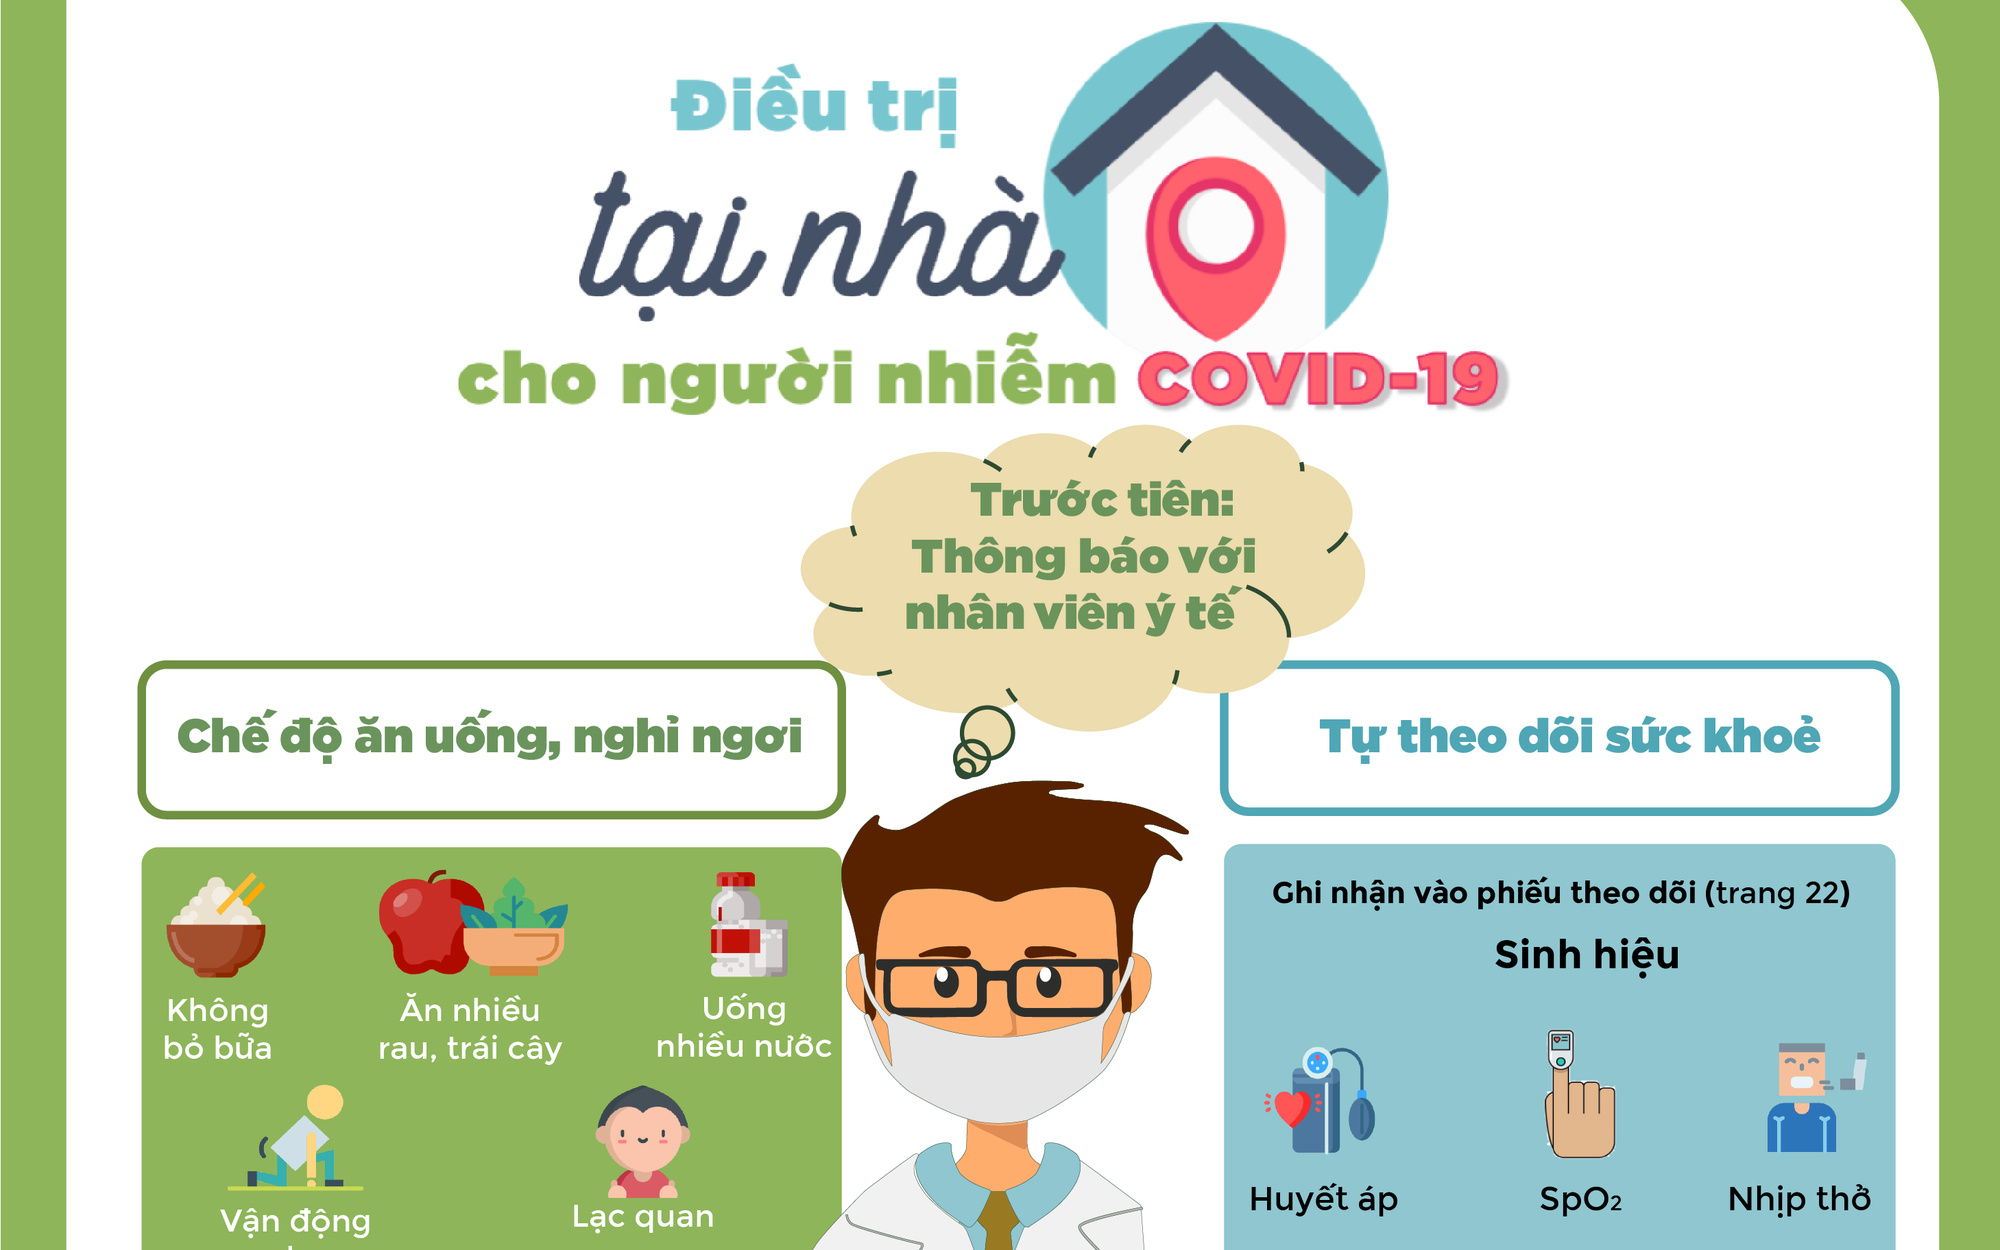 [Infographic] Hướng dẫn sử dụng thuốc an toàn tại nhà cho người nhiễm COVID-19